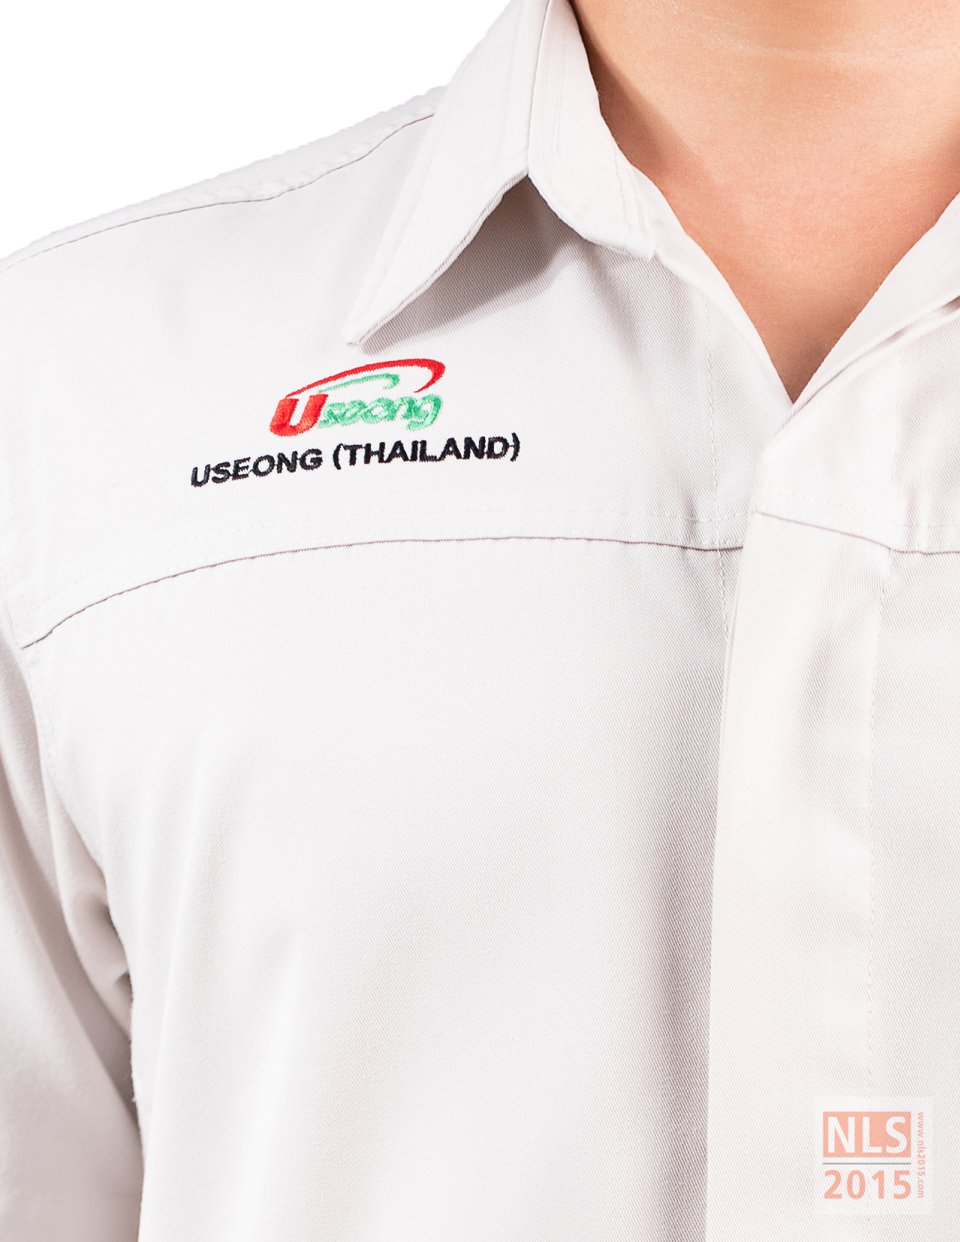 แบบชุดยูนิฟอร์มพนักงานบริษัท USEONG (THAILAND) / นลินสิริ รับตัดชุดฟอร์มพนักงานบริษัทรูปที่ 